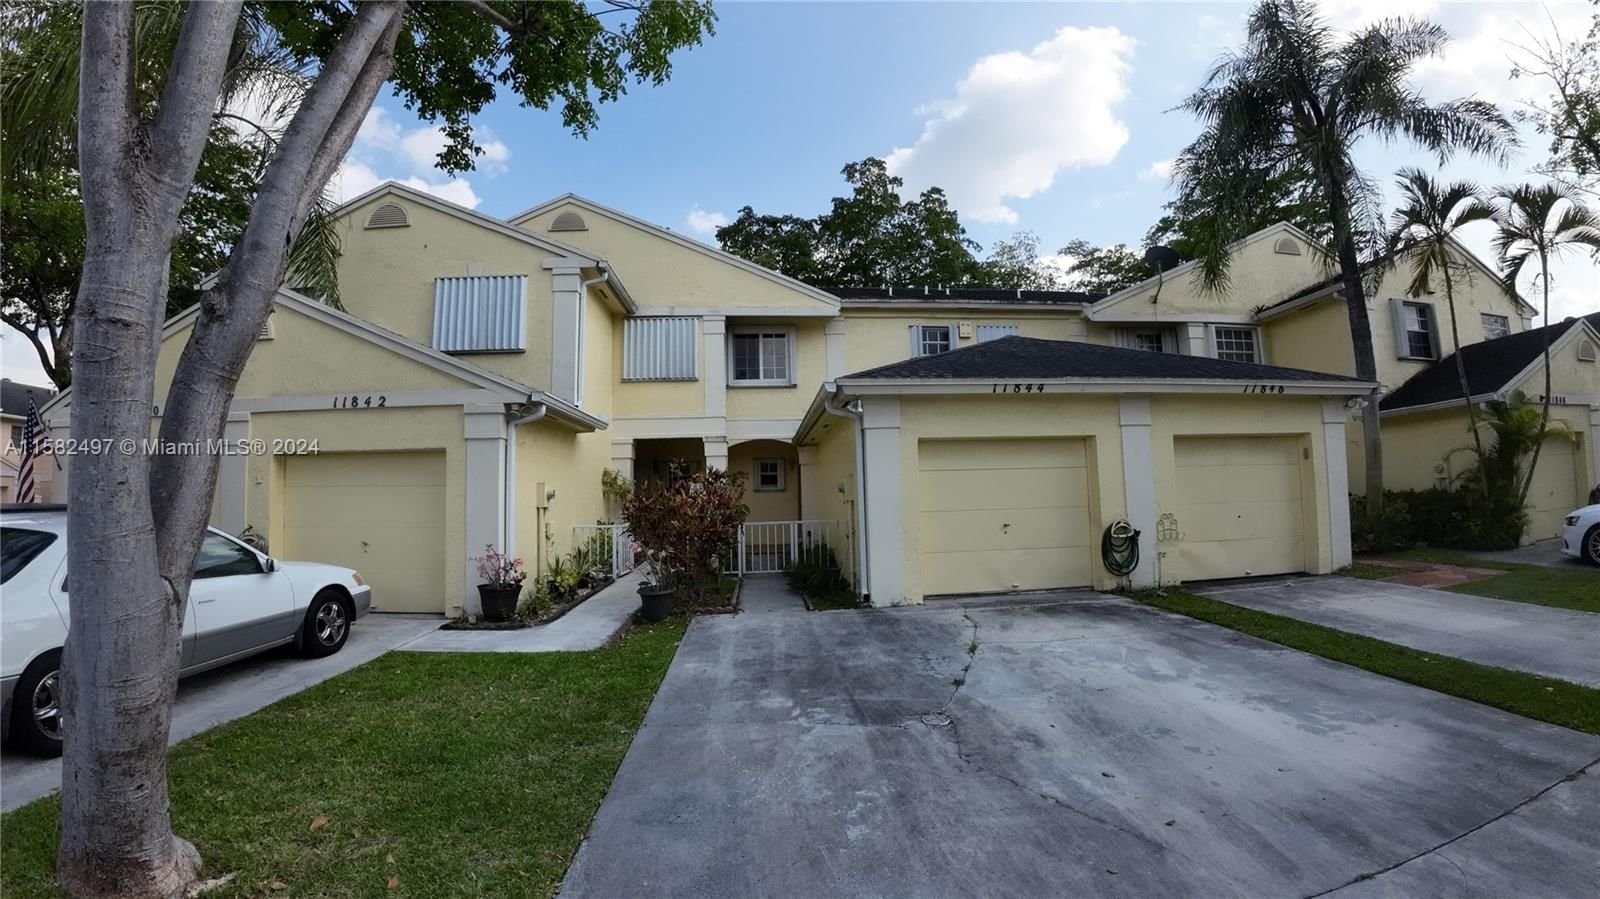 Real estate property located at 11844 97th Ter, Miami-Dade County, AMARETTO 1ST ADDN, Miami, FL